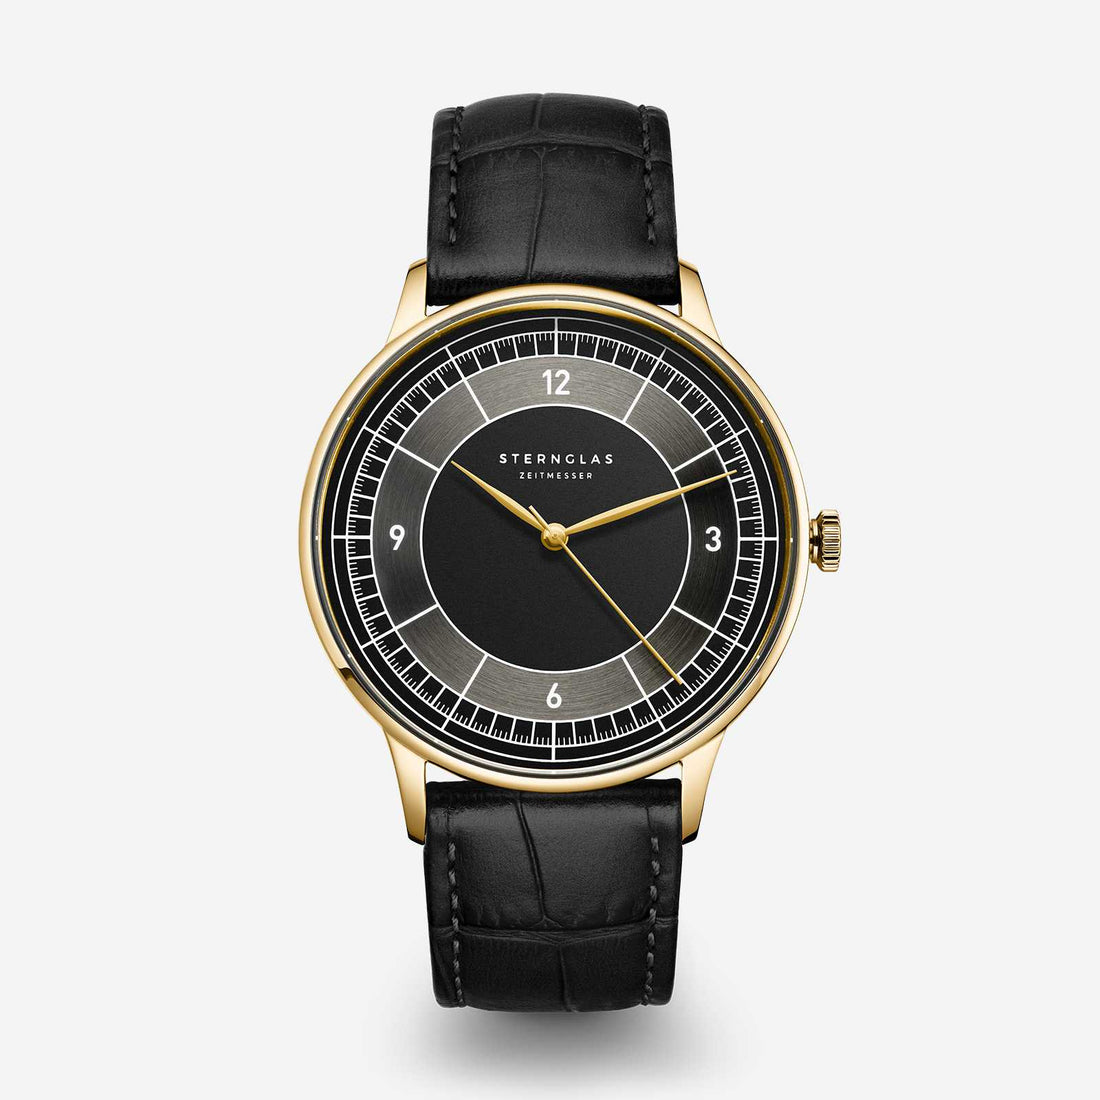 Sternglas Bauhaus Watches Designed In Hamburg